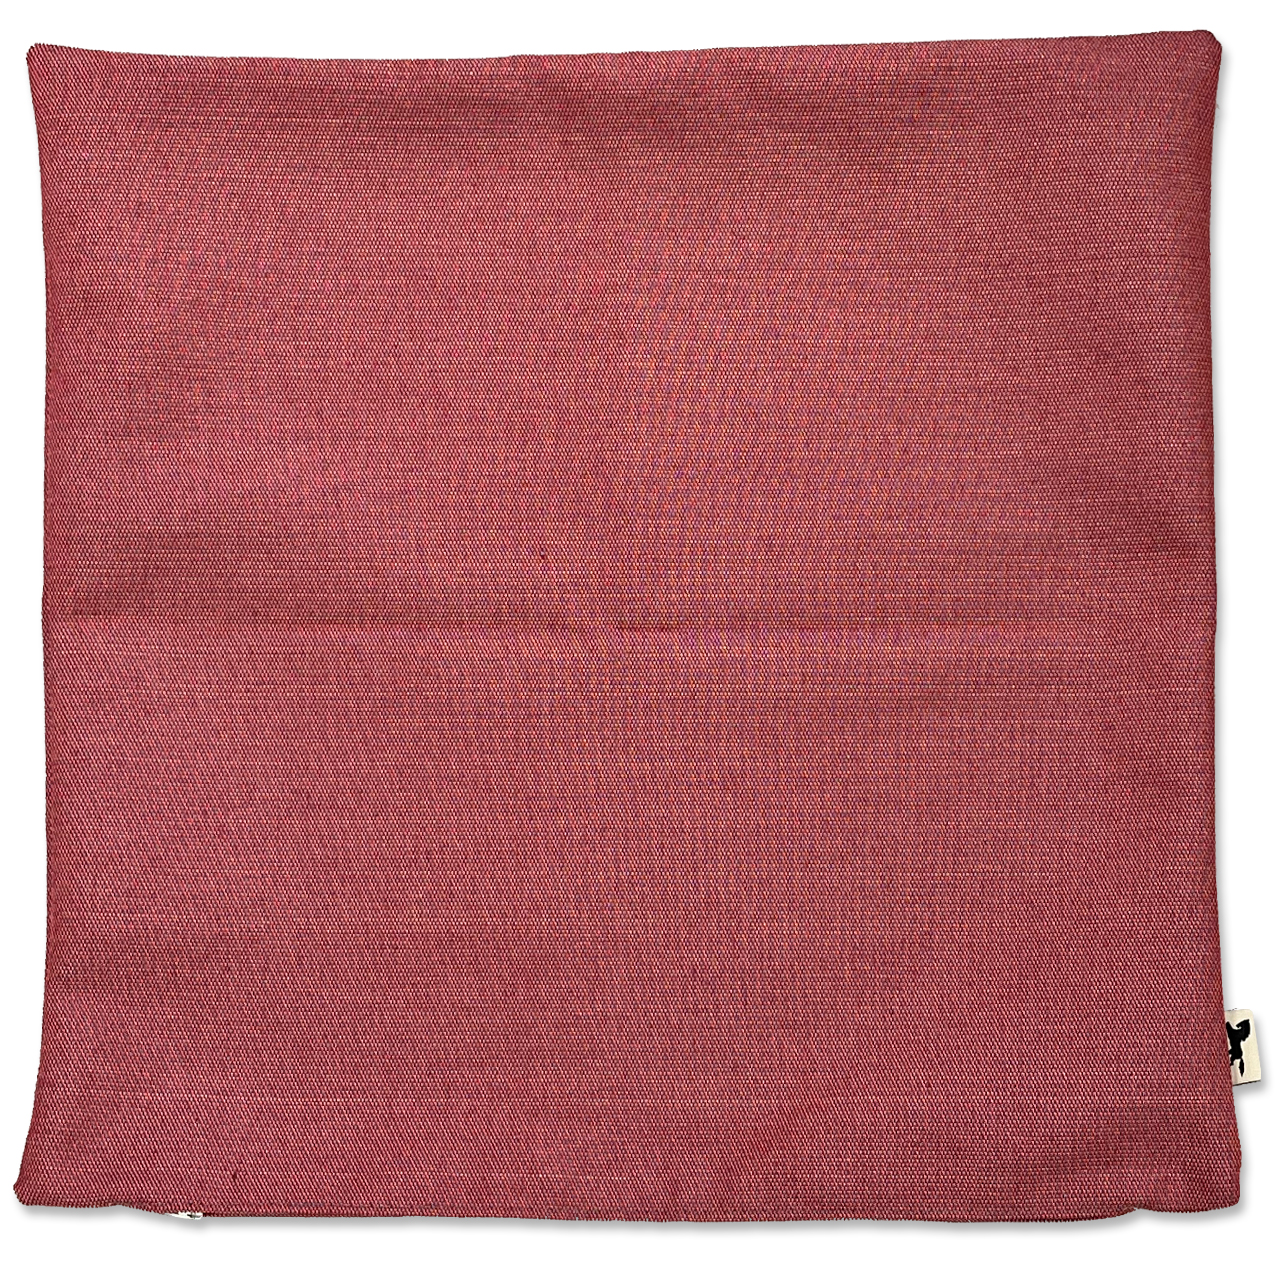 クッションカバー Twist (pink red) 約50×50cm 難燃剤入りポリエステル